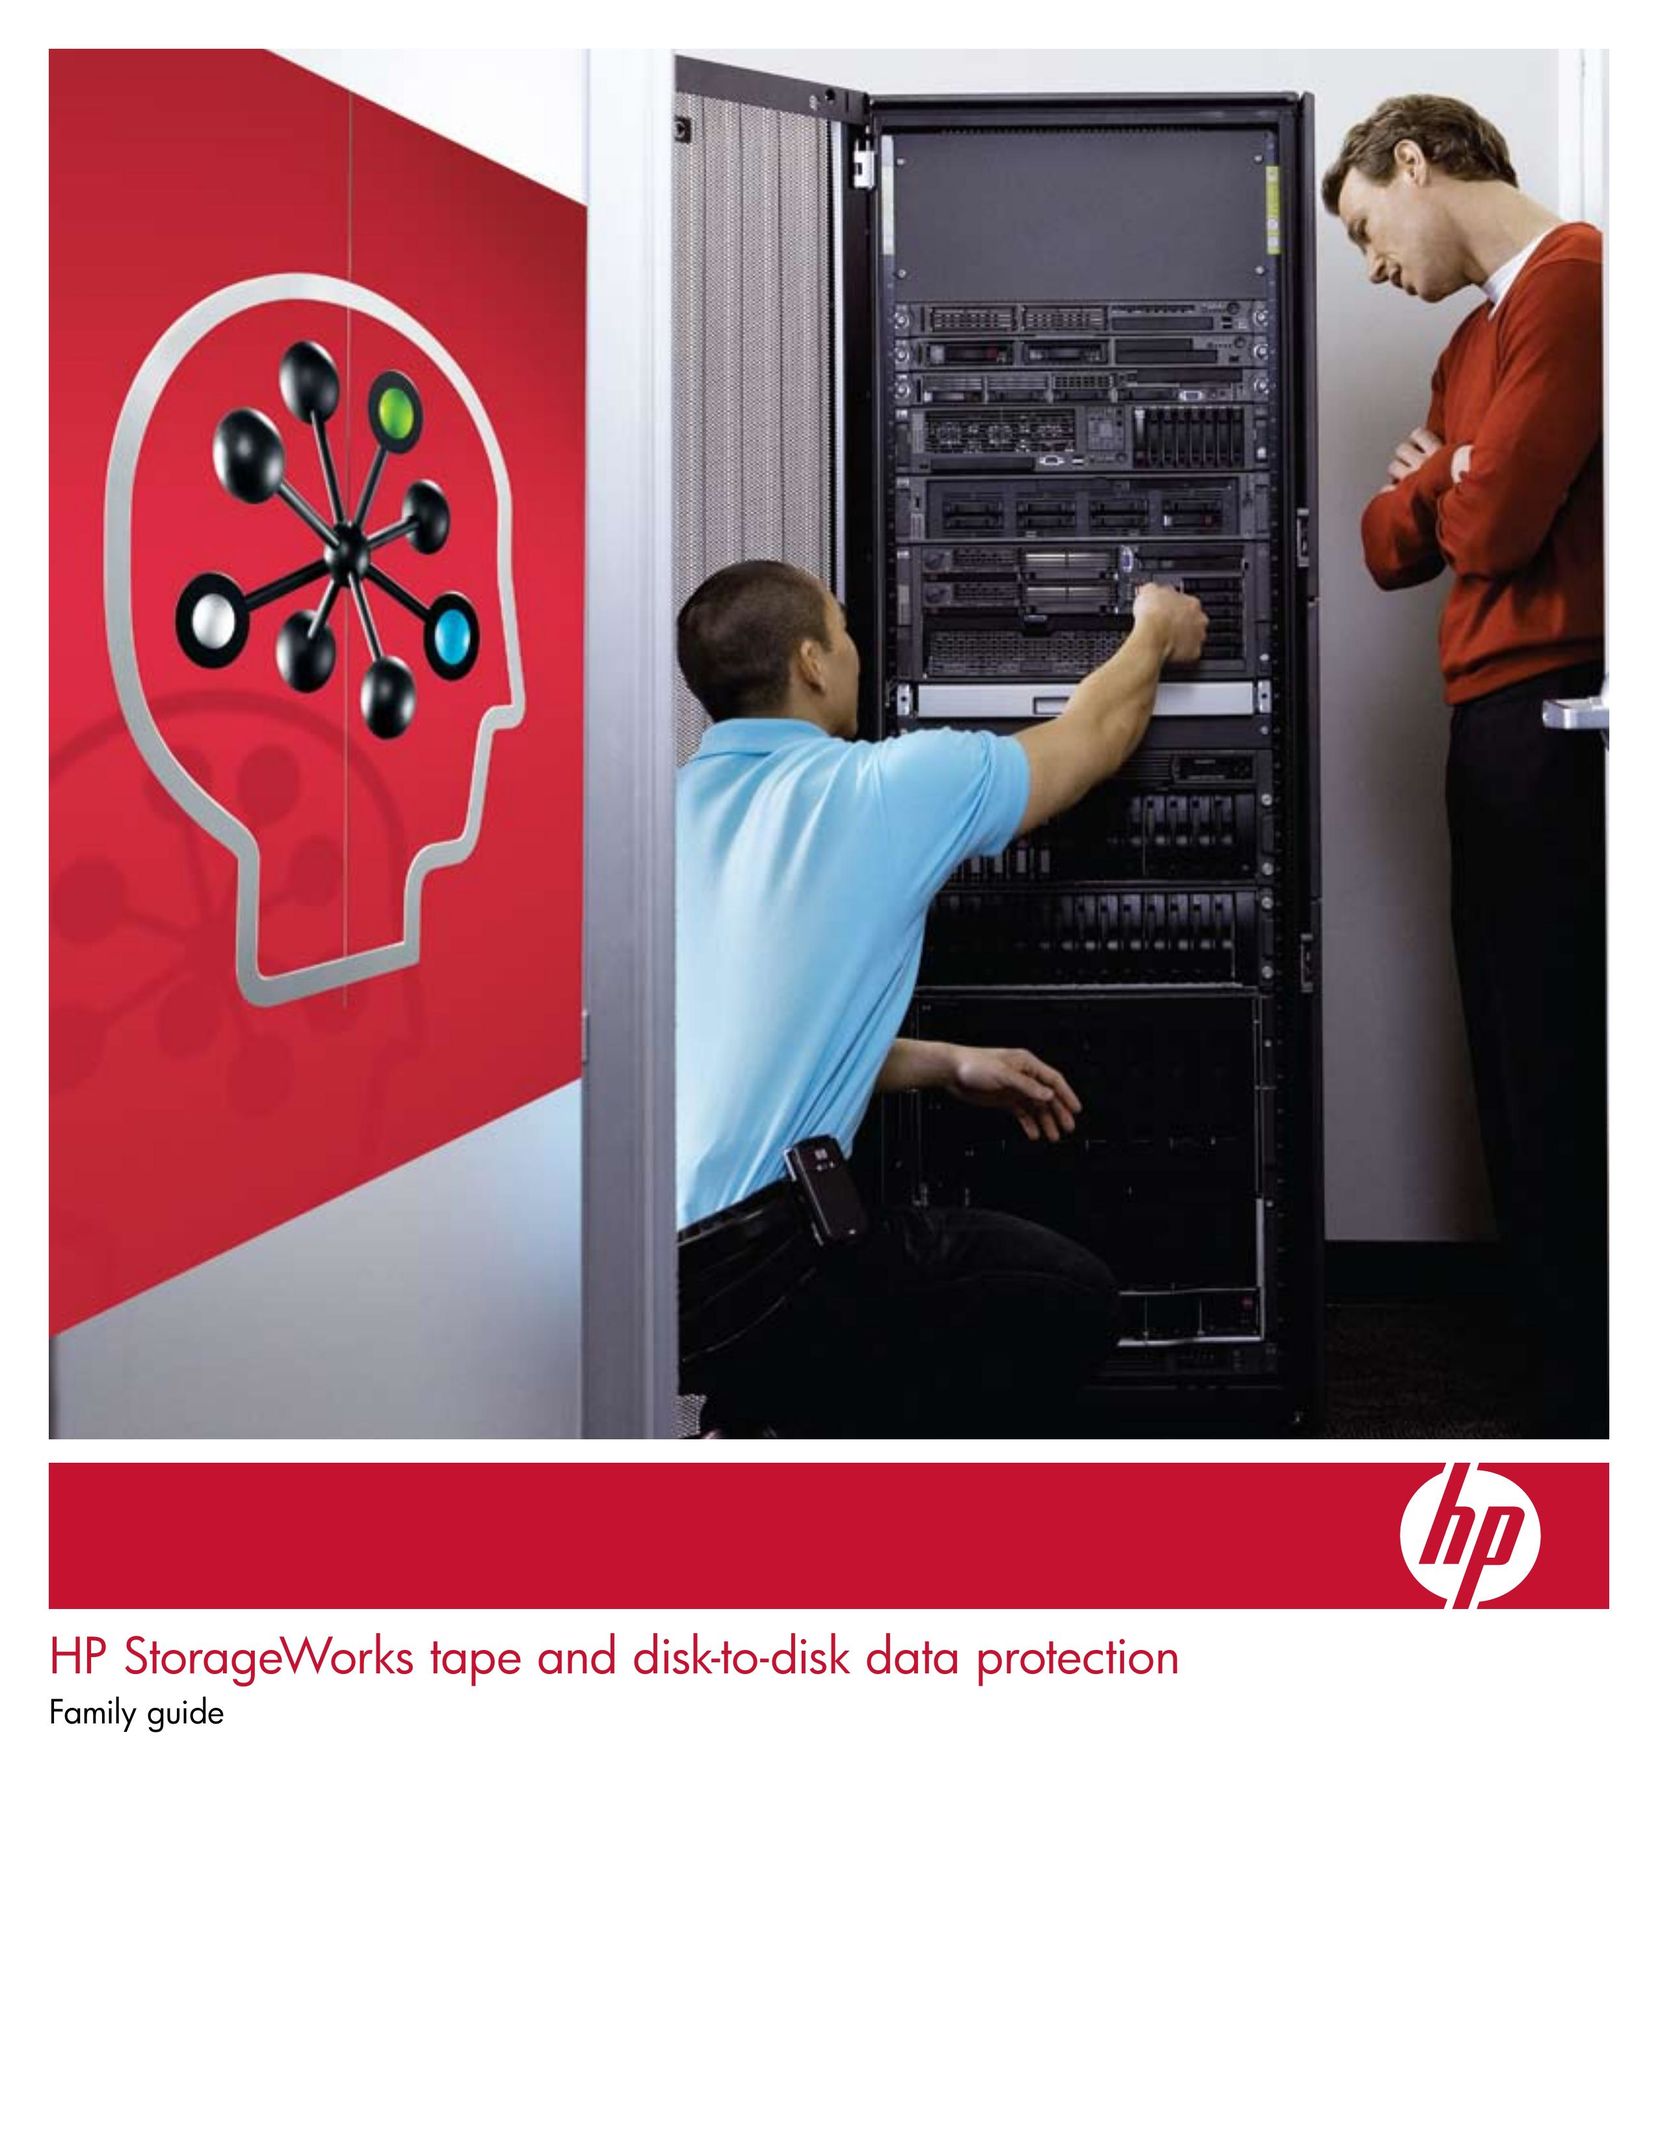 HP (Hewlett-Packard) D2D120 Computer Drive User Manual